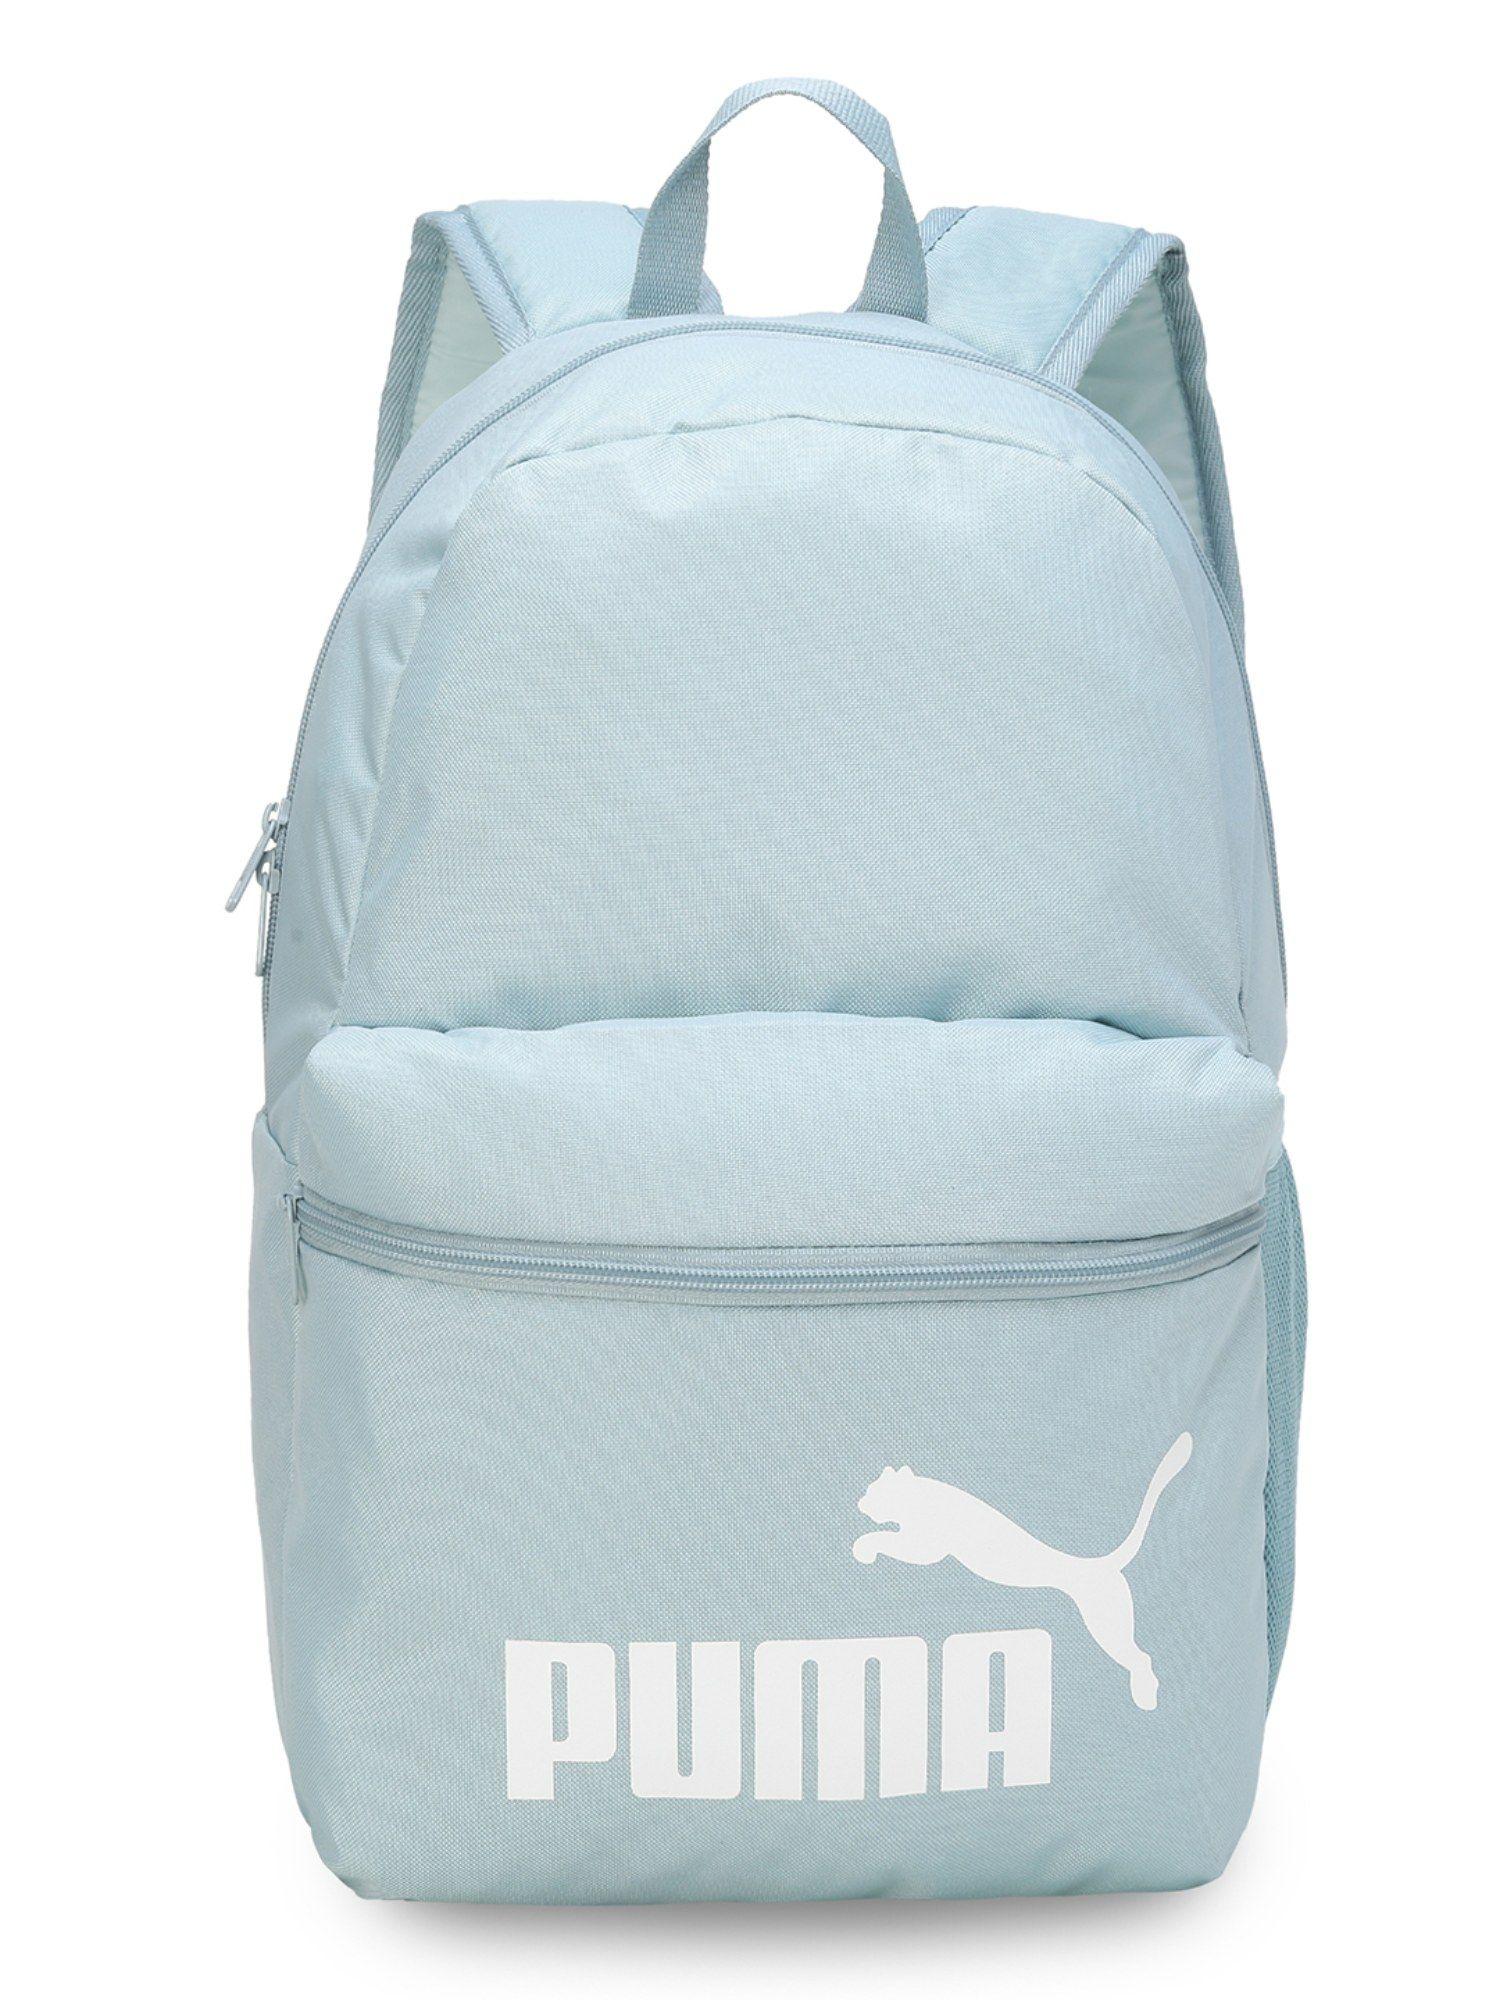 phase unisex blue backpack